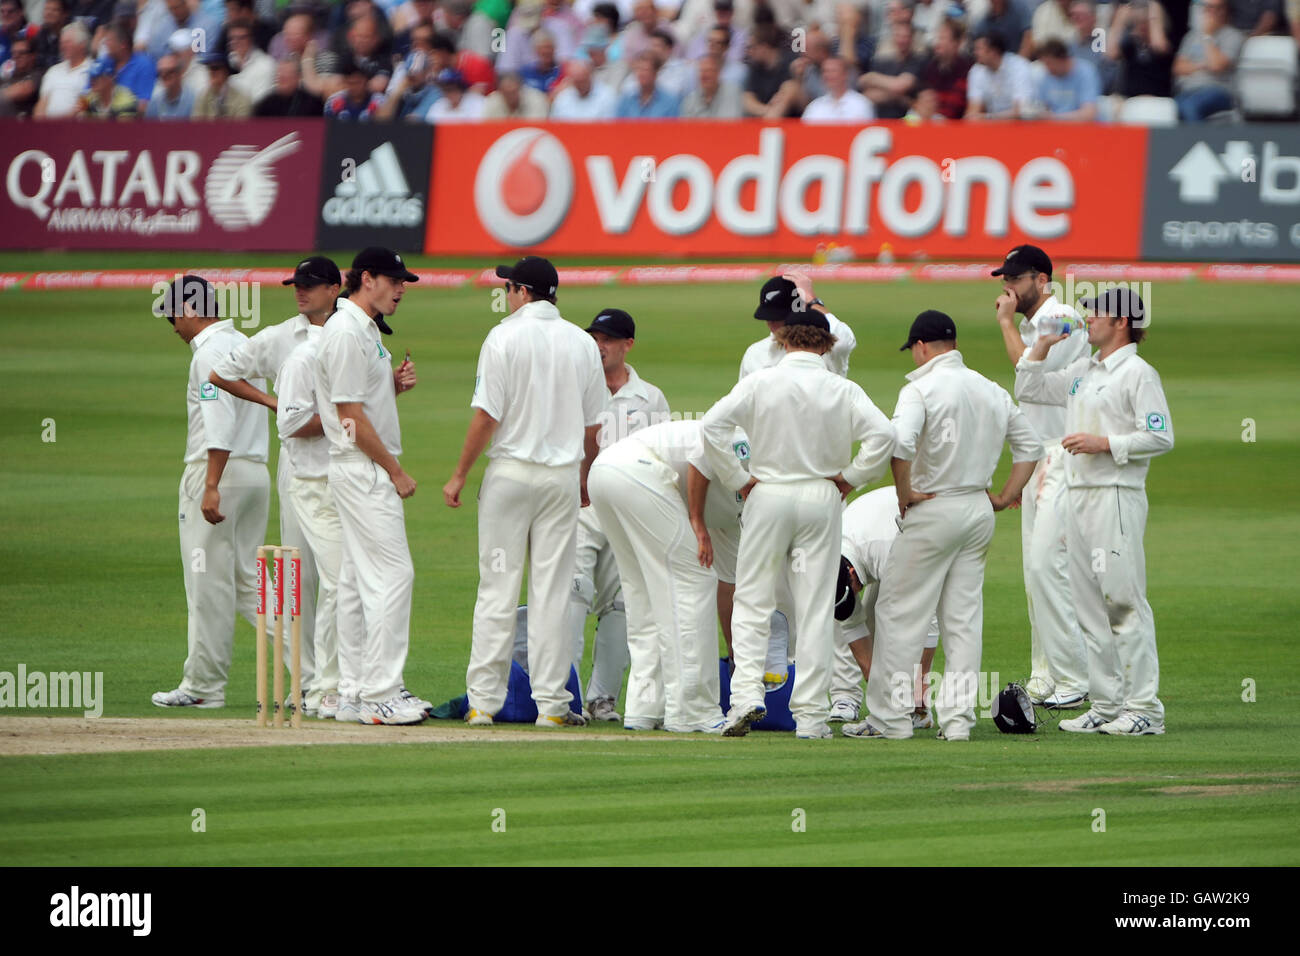 Cricket - troisième match de npower Test - deuxième jour - Angleterre contre Nouvelle-Zélande - Trent Bridge.Les joueurs néo-zélandais font une pause-boisson dans le match contre l'Angleterre Banque D'Images